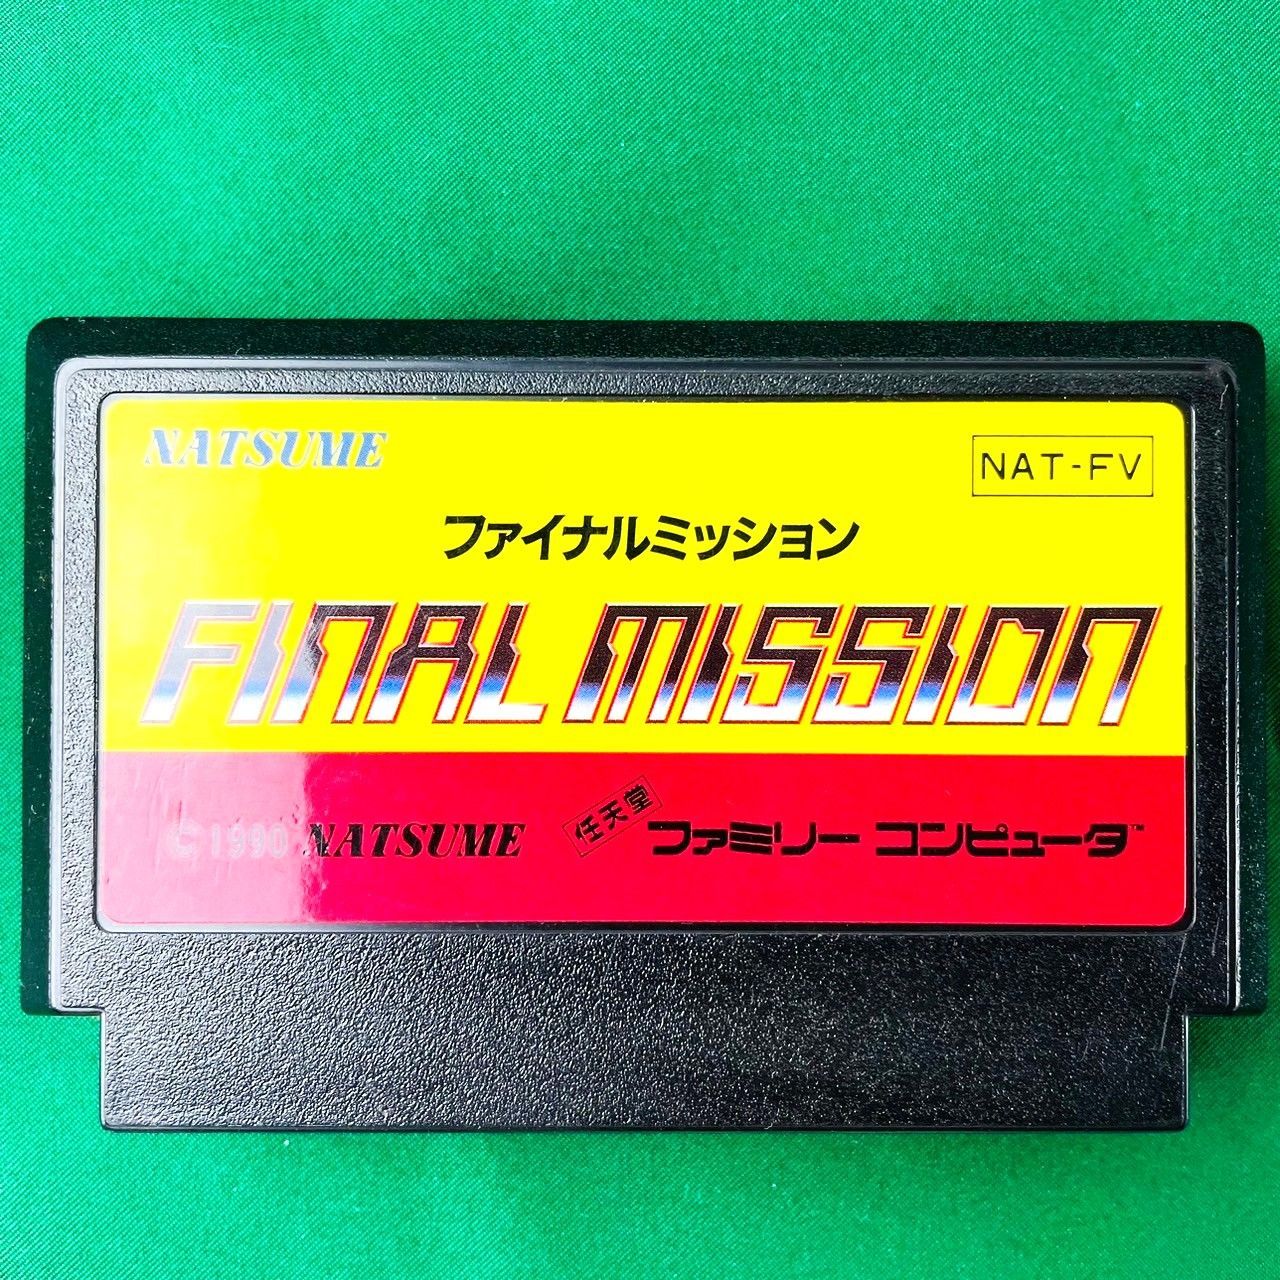 ◇ FC ファイナルミッション FINAL MISSION カセット ソフト NAT-FV 